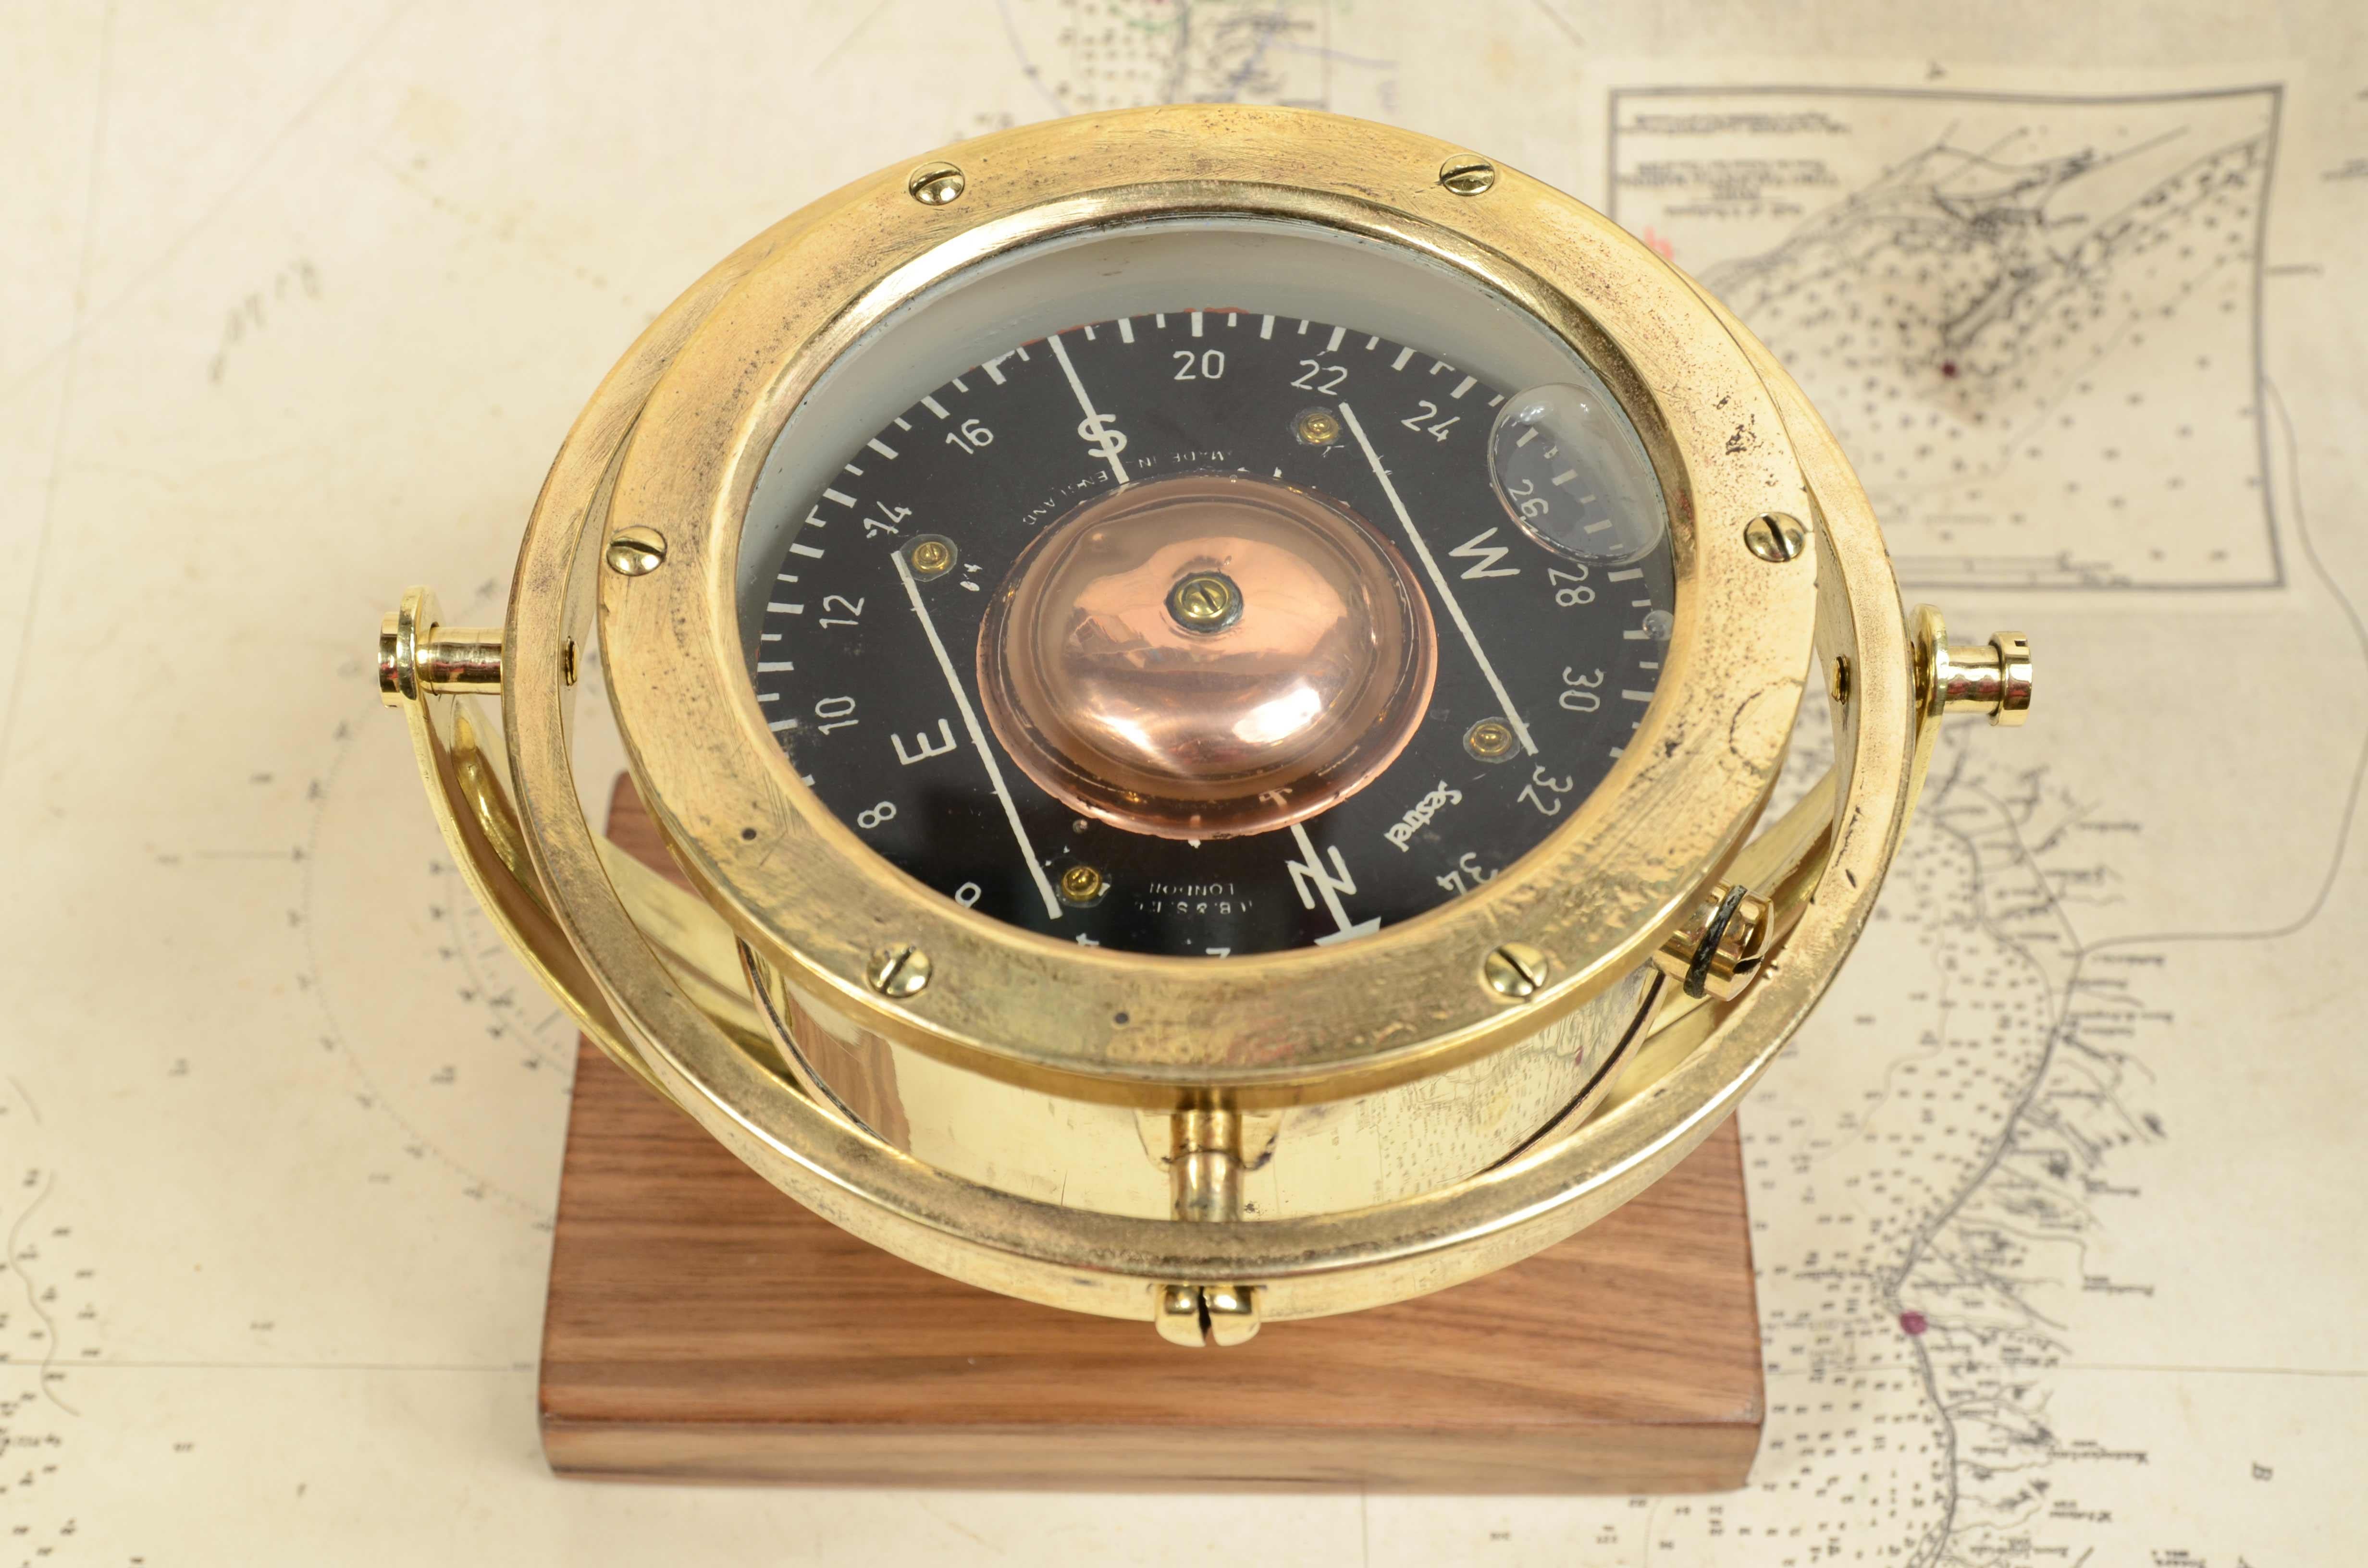 Luftfahrtkompass signiert Henry Browne & Son Ltd Sestrel 1930er Jahre, Nr. C 8928 Messing und Glas, montiert auf einer maßgefertigten Platte aus Nussbaum und Messing. Sehr guter, voll funktionsfähiger Zustand. Zirkeldurchmesser cm 13.5 - 5.6 inch,